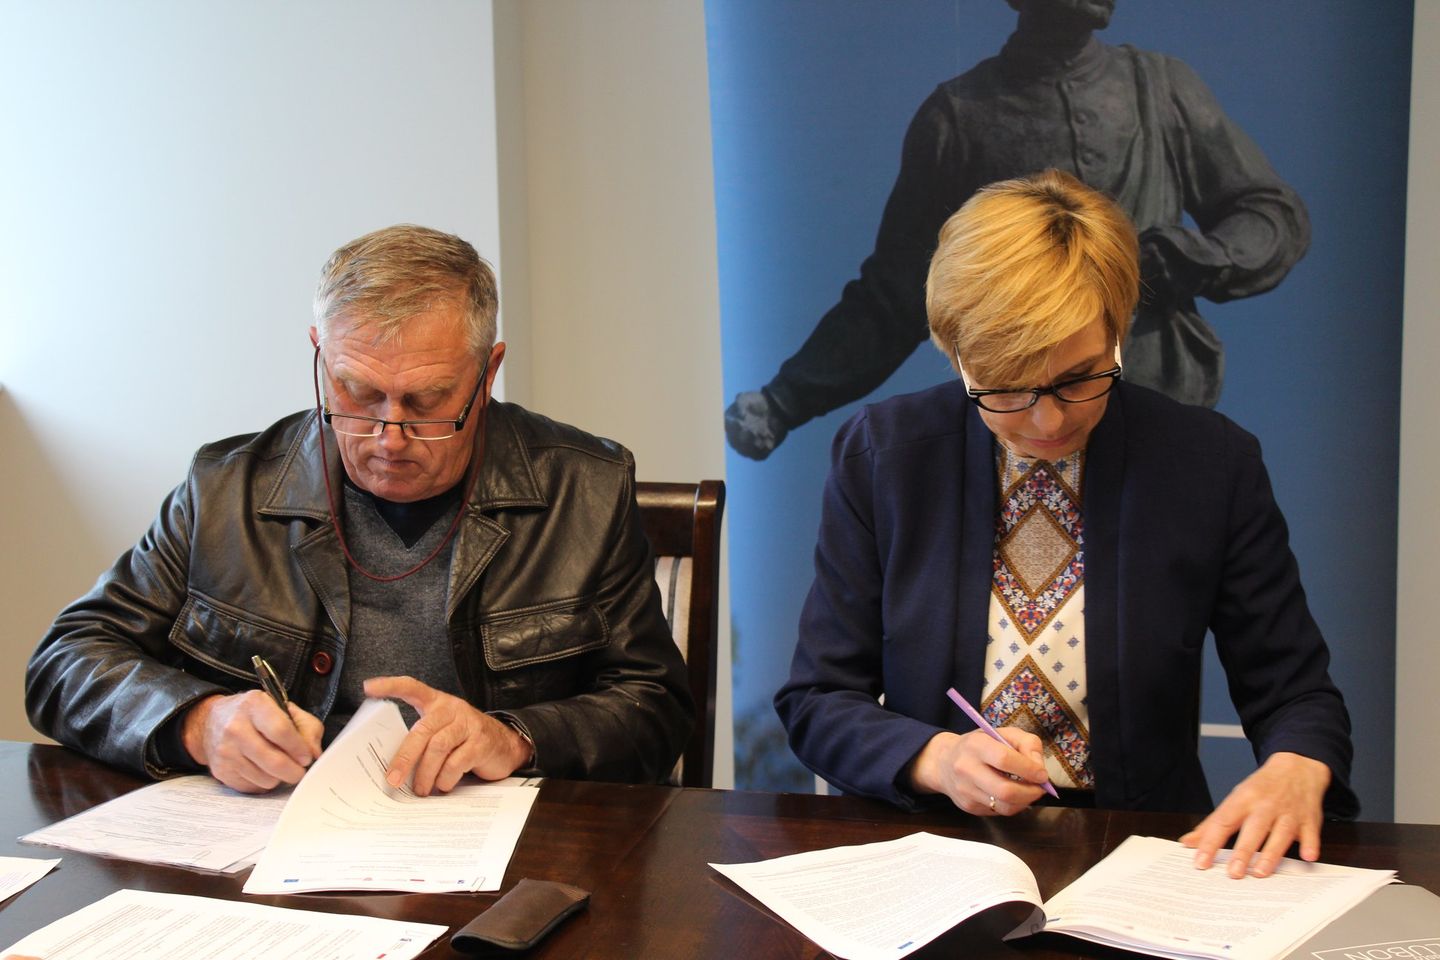 Na zdjęciu znajdują się dwie osoby podpisujące dokumenty.